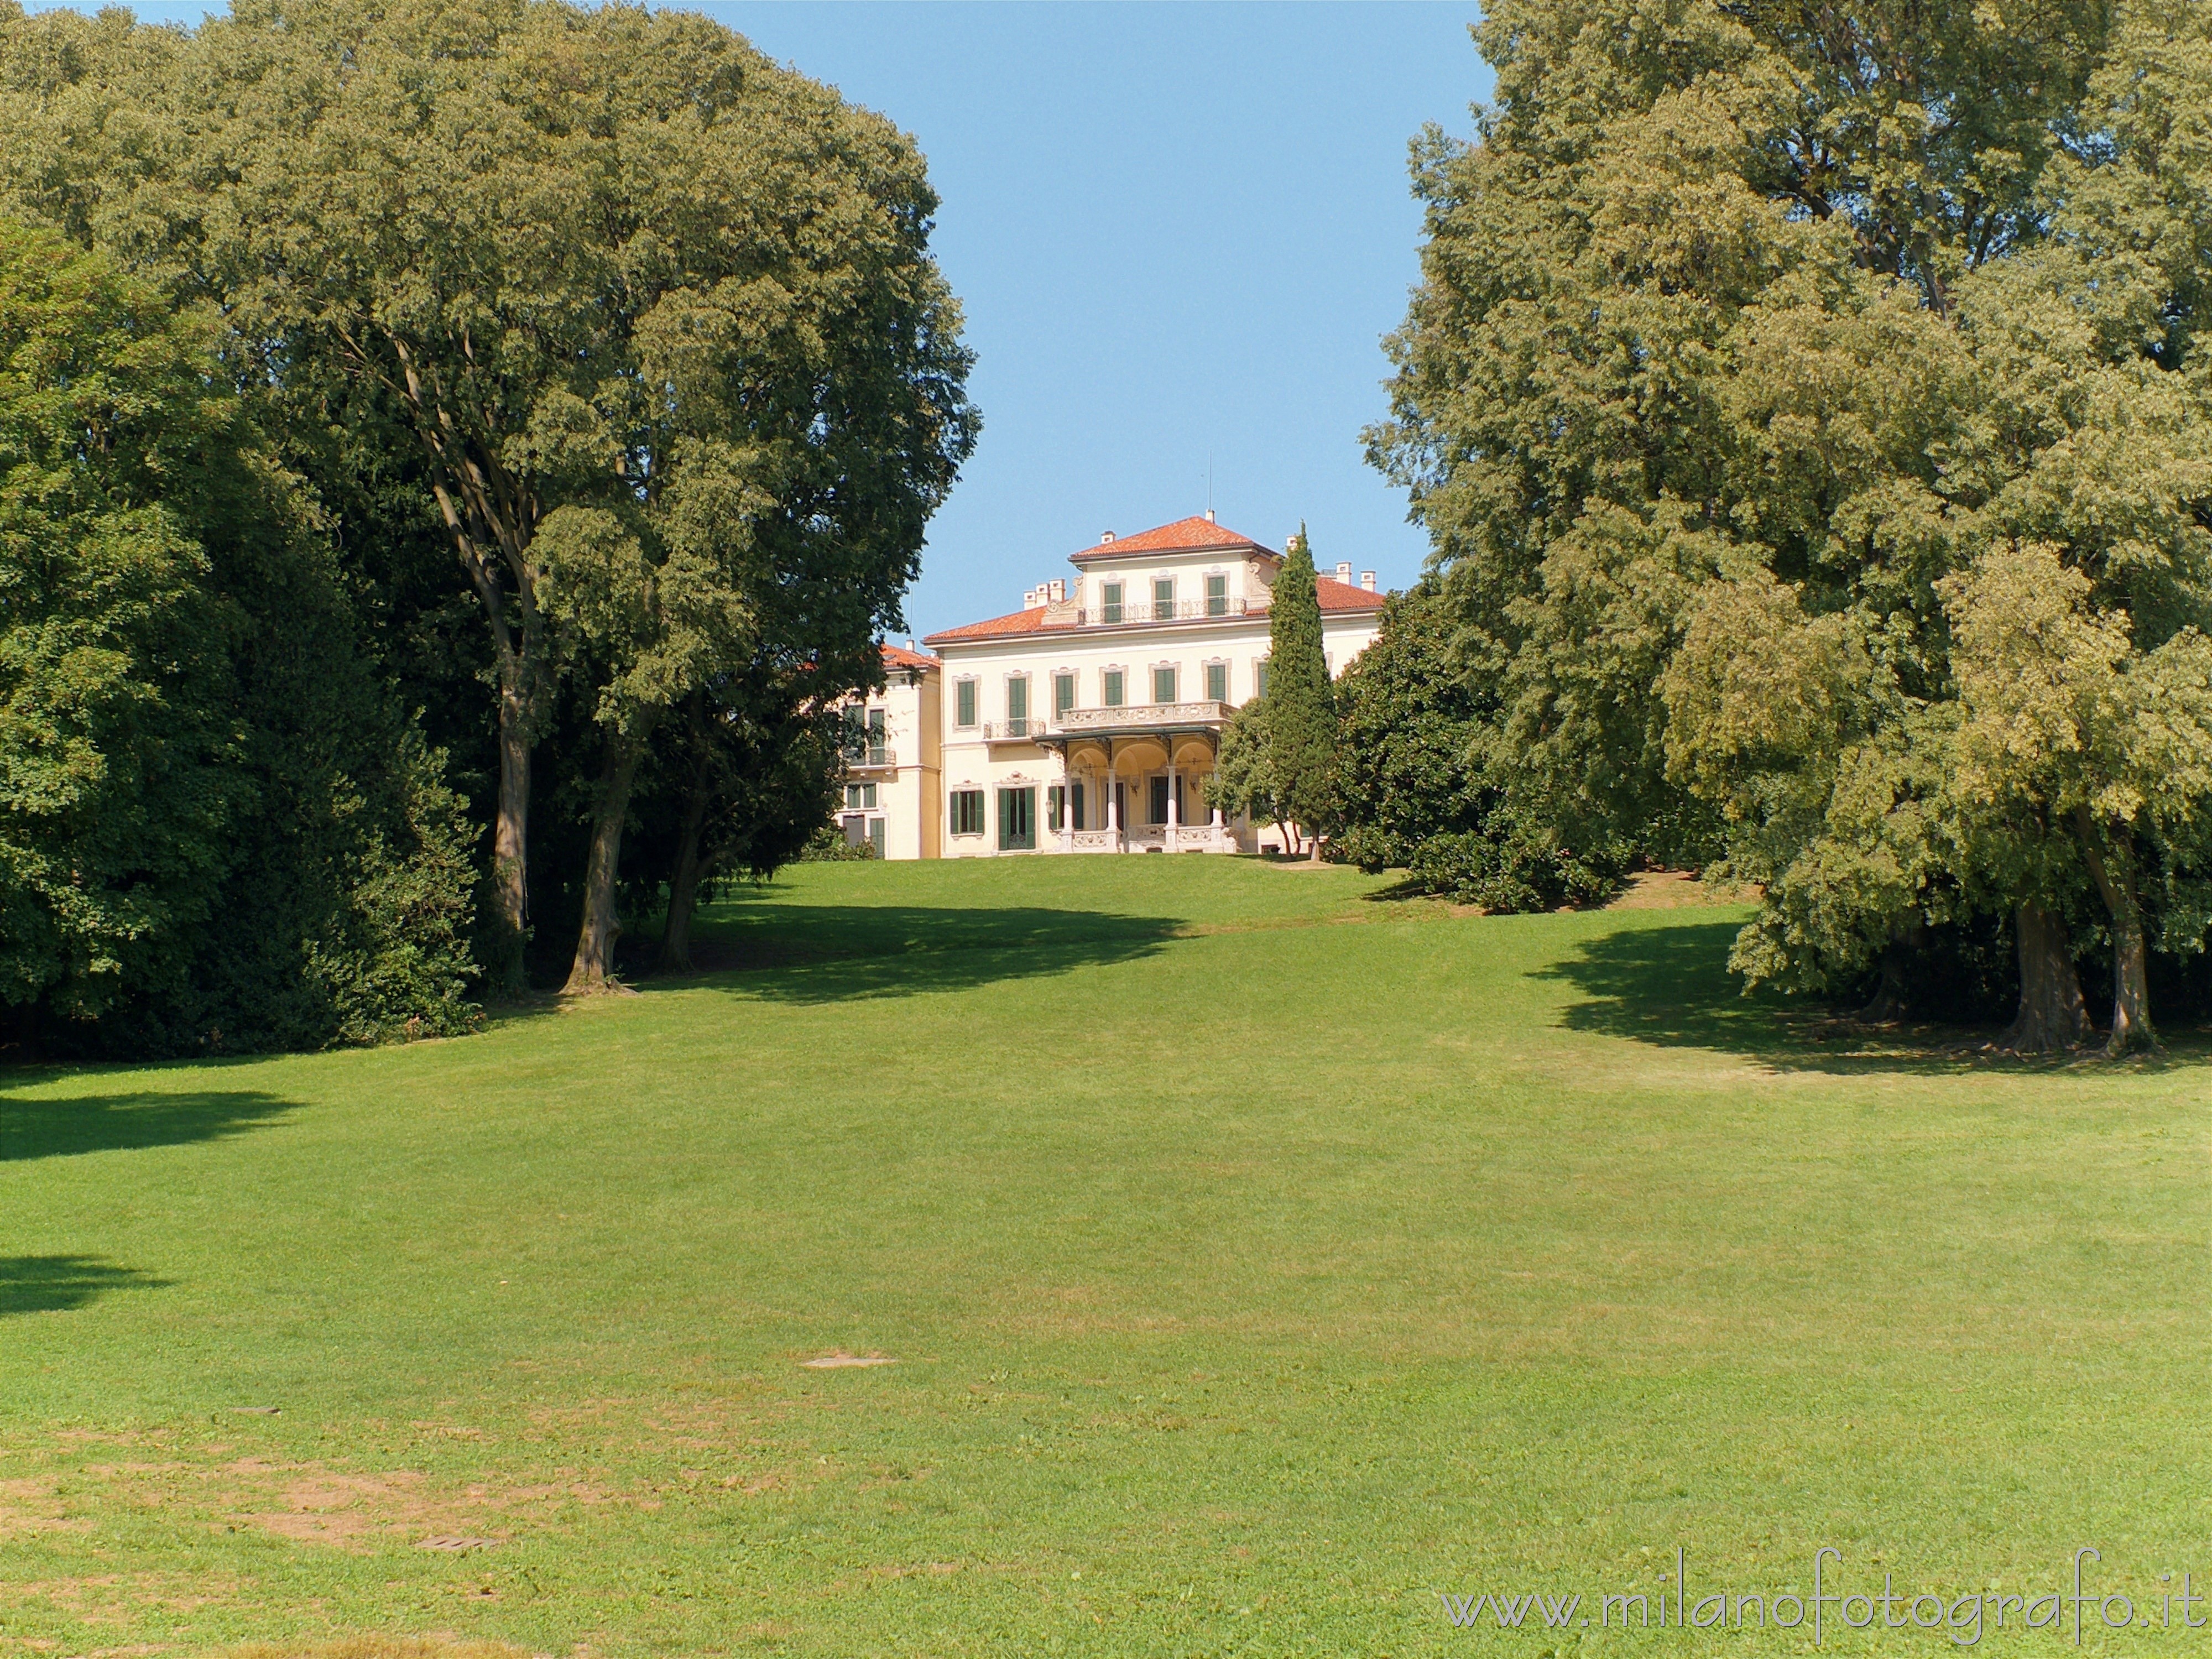 Arcore (Monza e Brianza, Italy): Villa Borromeo d'Adda seen from the main entrance - Arcore (Monza e Brianza, Italy)